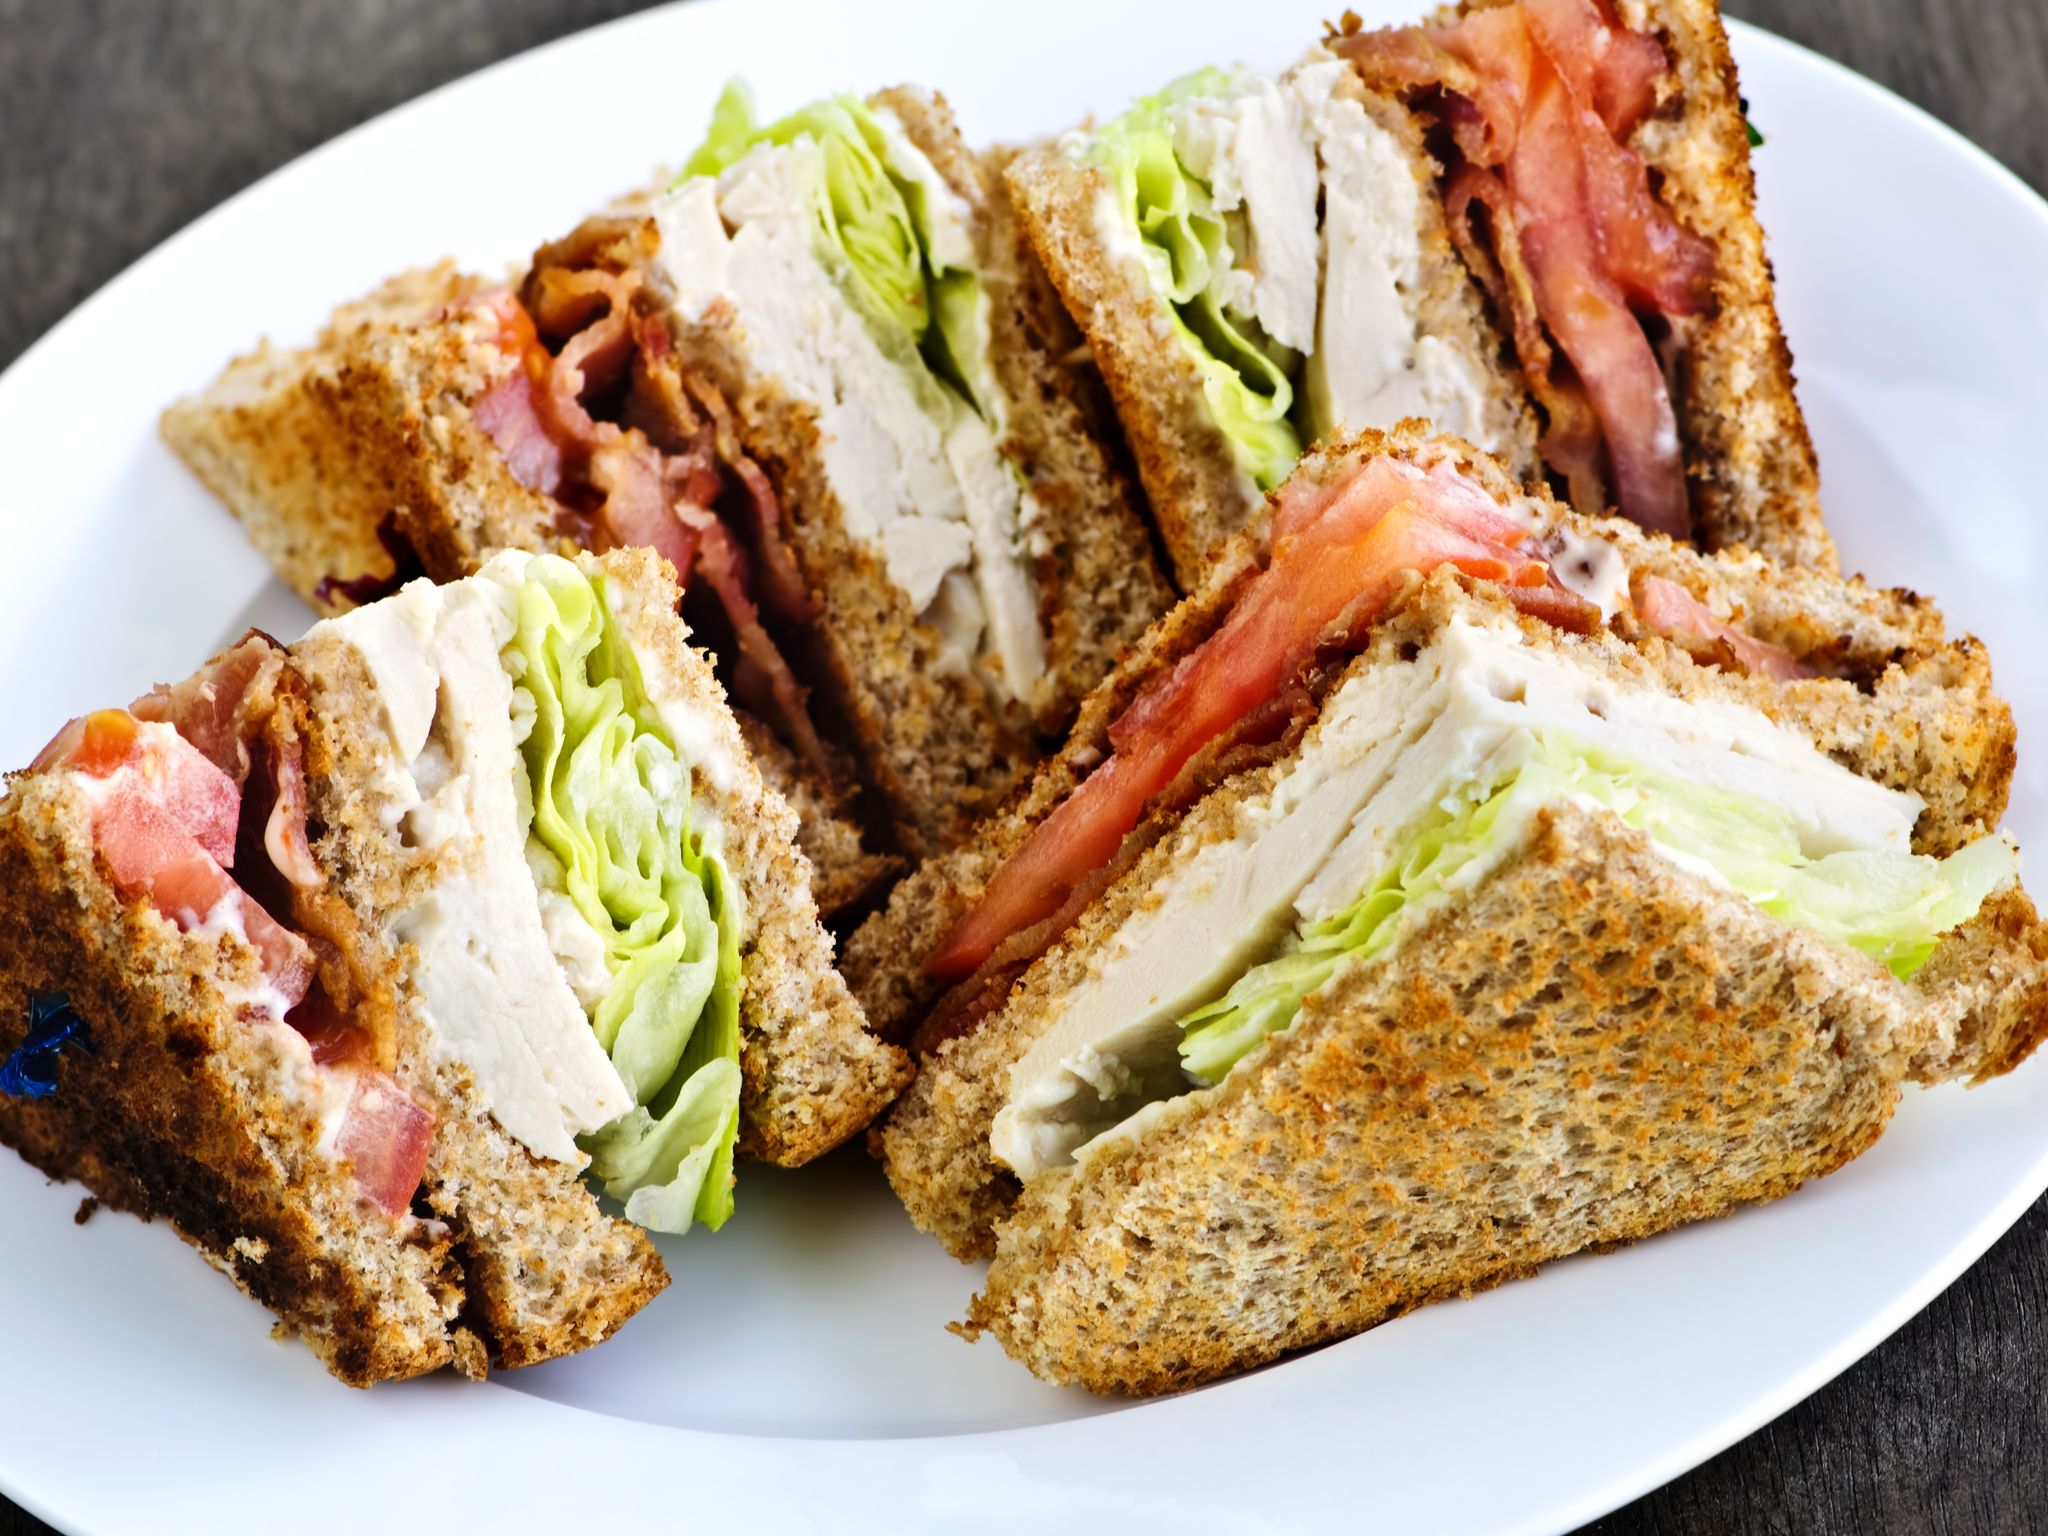 Club Sandwich Au Poulet Recettes Club Sandwich Sandwich Au Poulet Hot